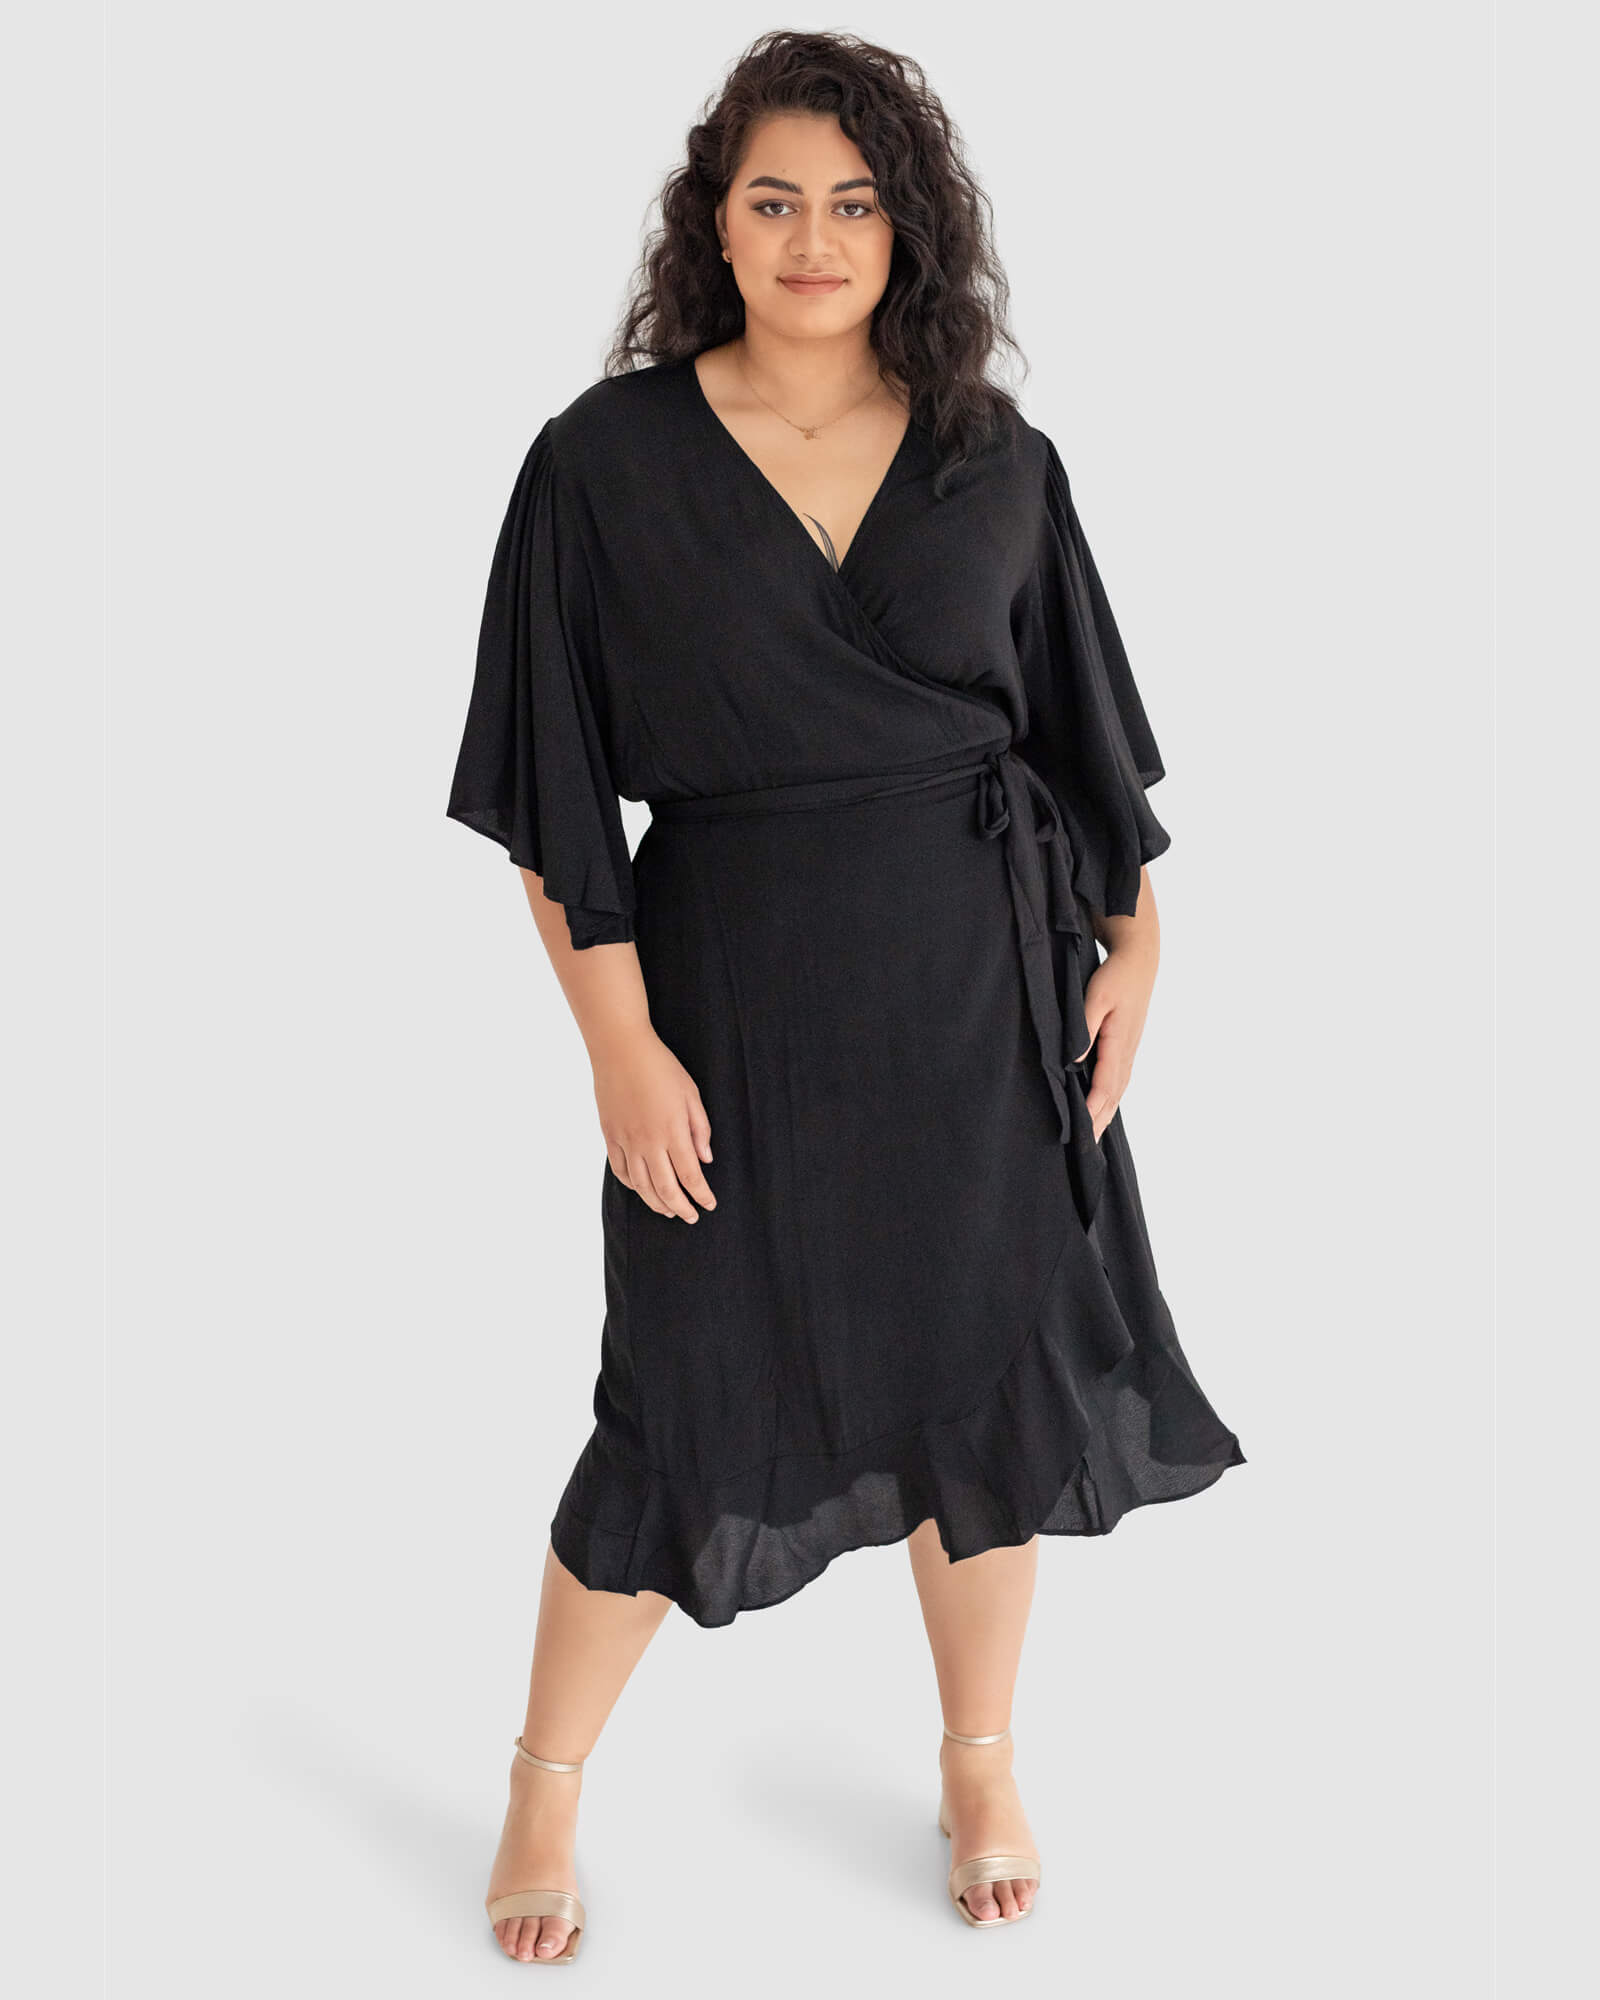 Gabrielle Short Sleeve Wrap Dress in Black - Dani Marie US